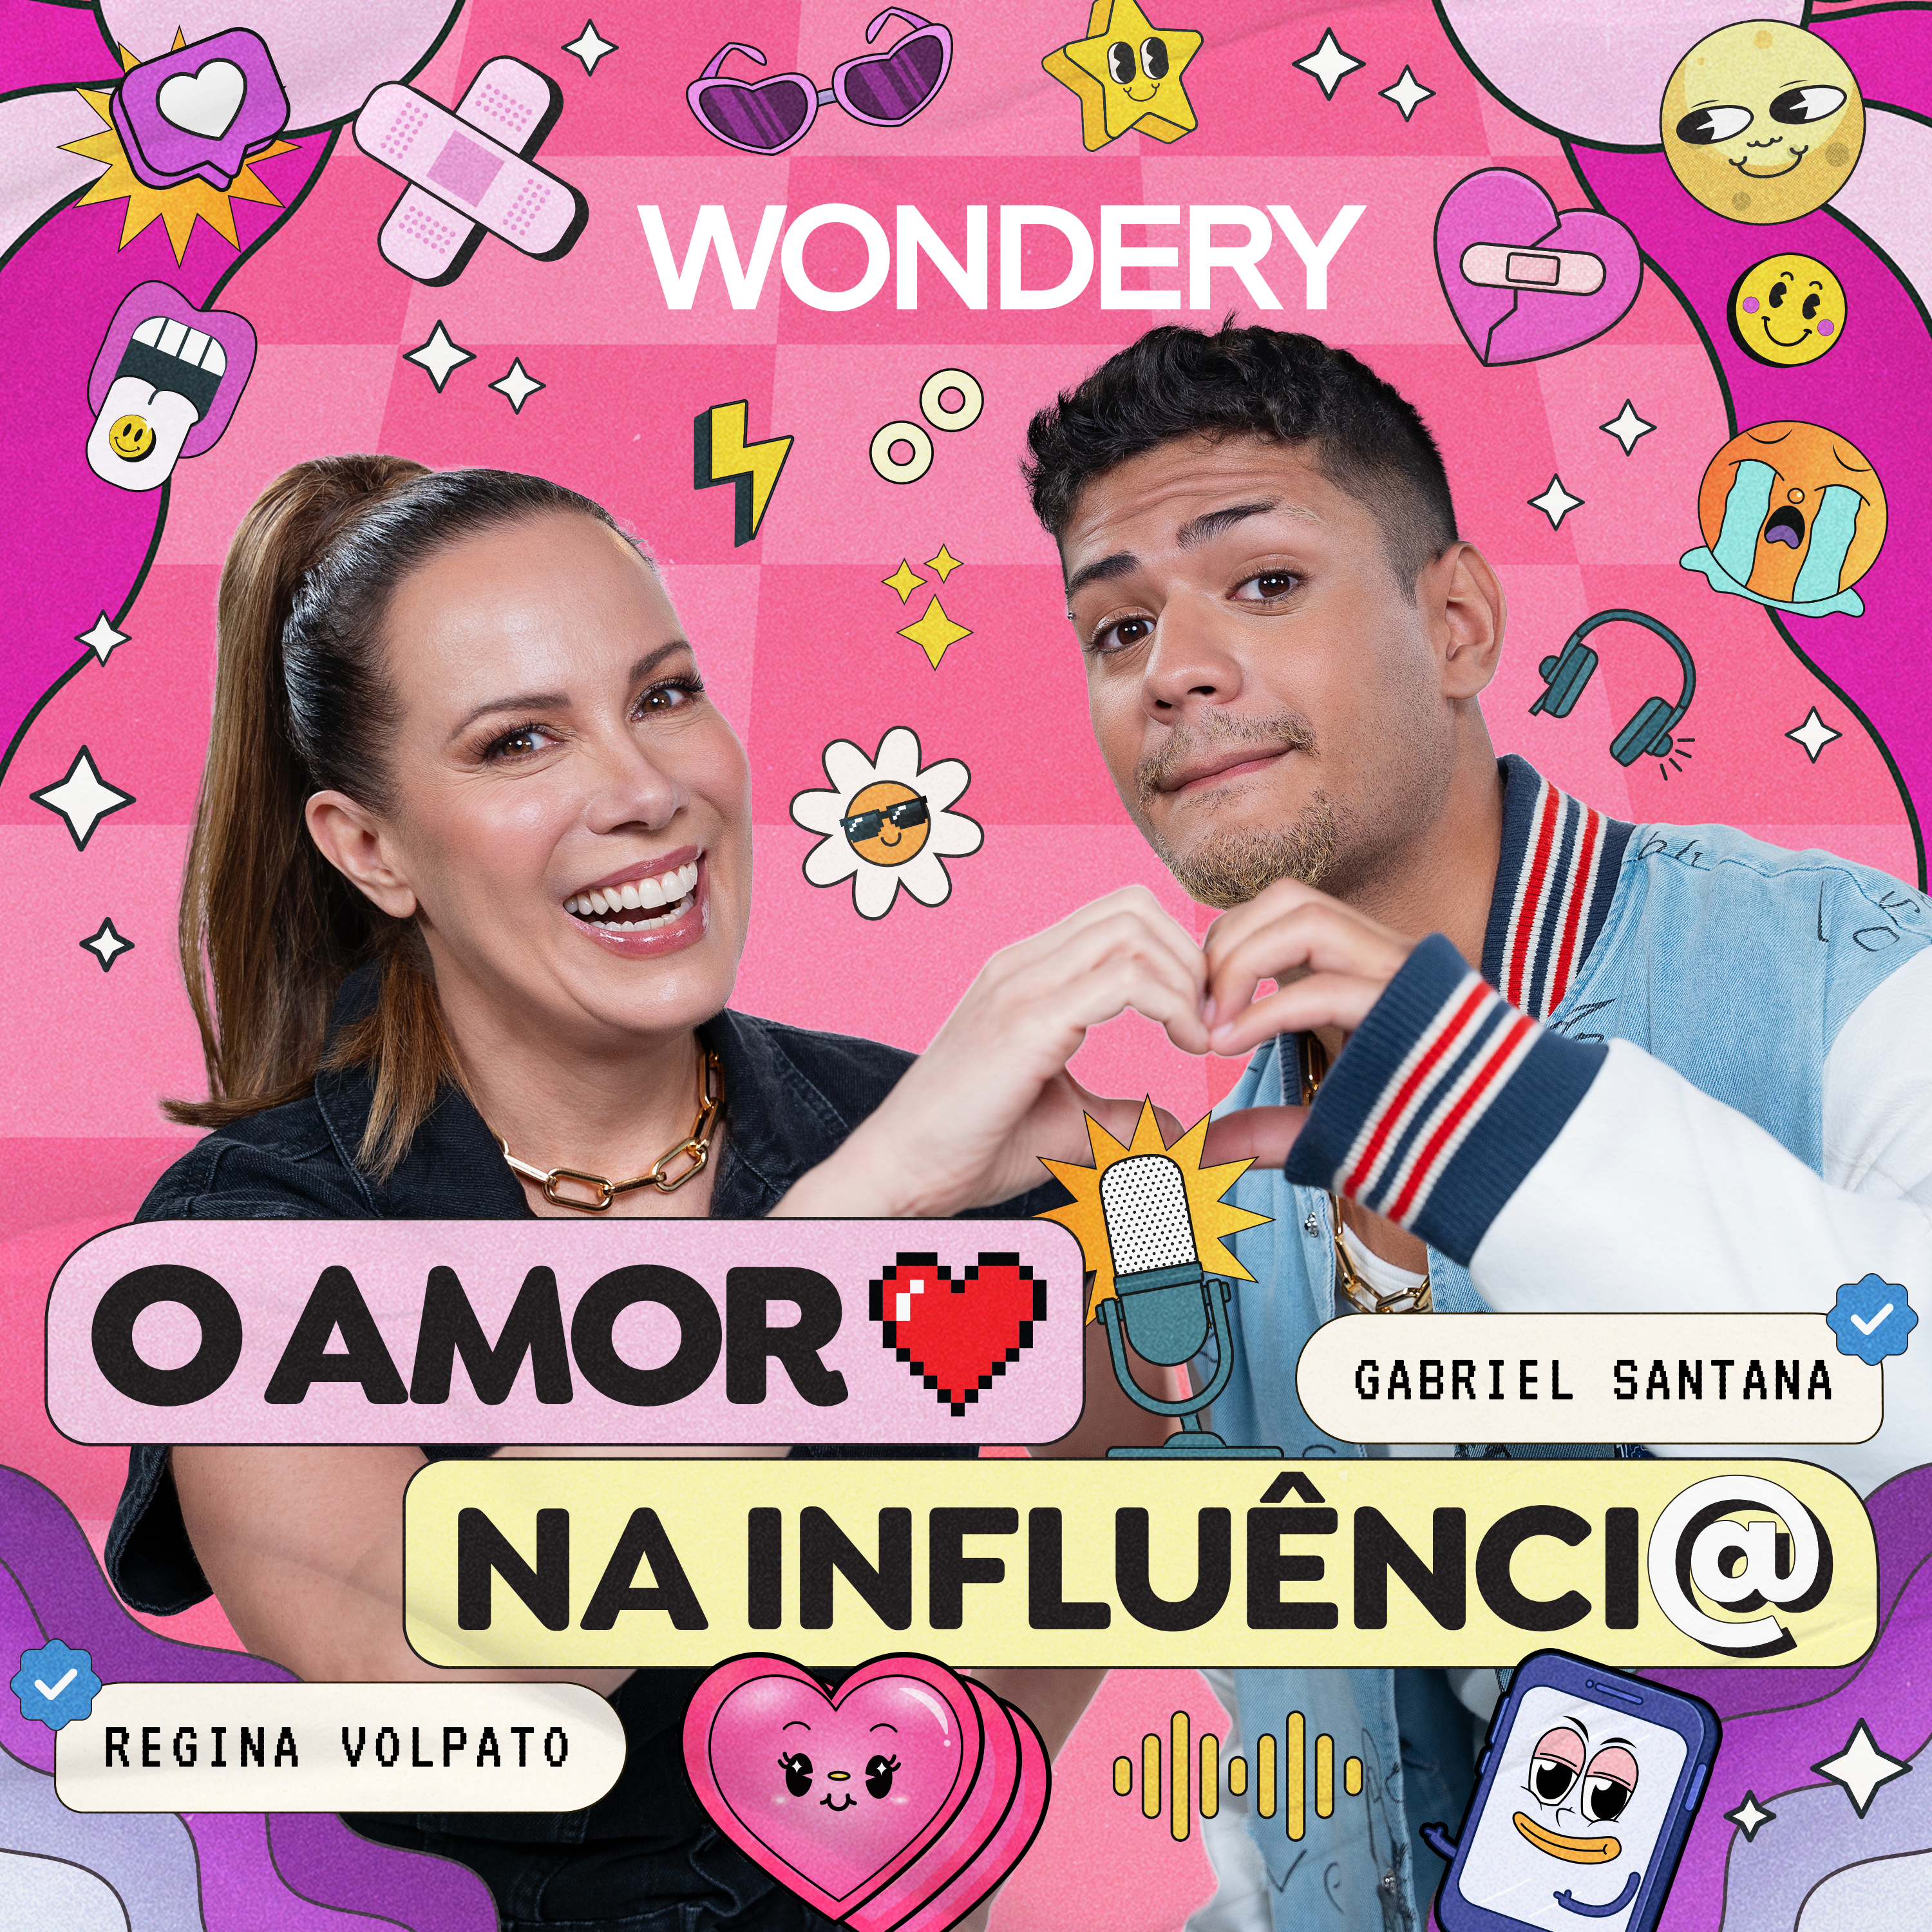 Descubra o Amor na Influência: O Novo Videocast da Wondery com Regina Volpato e Gabriel Santana